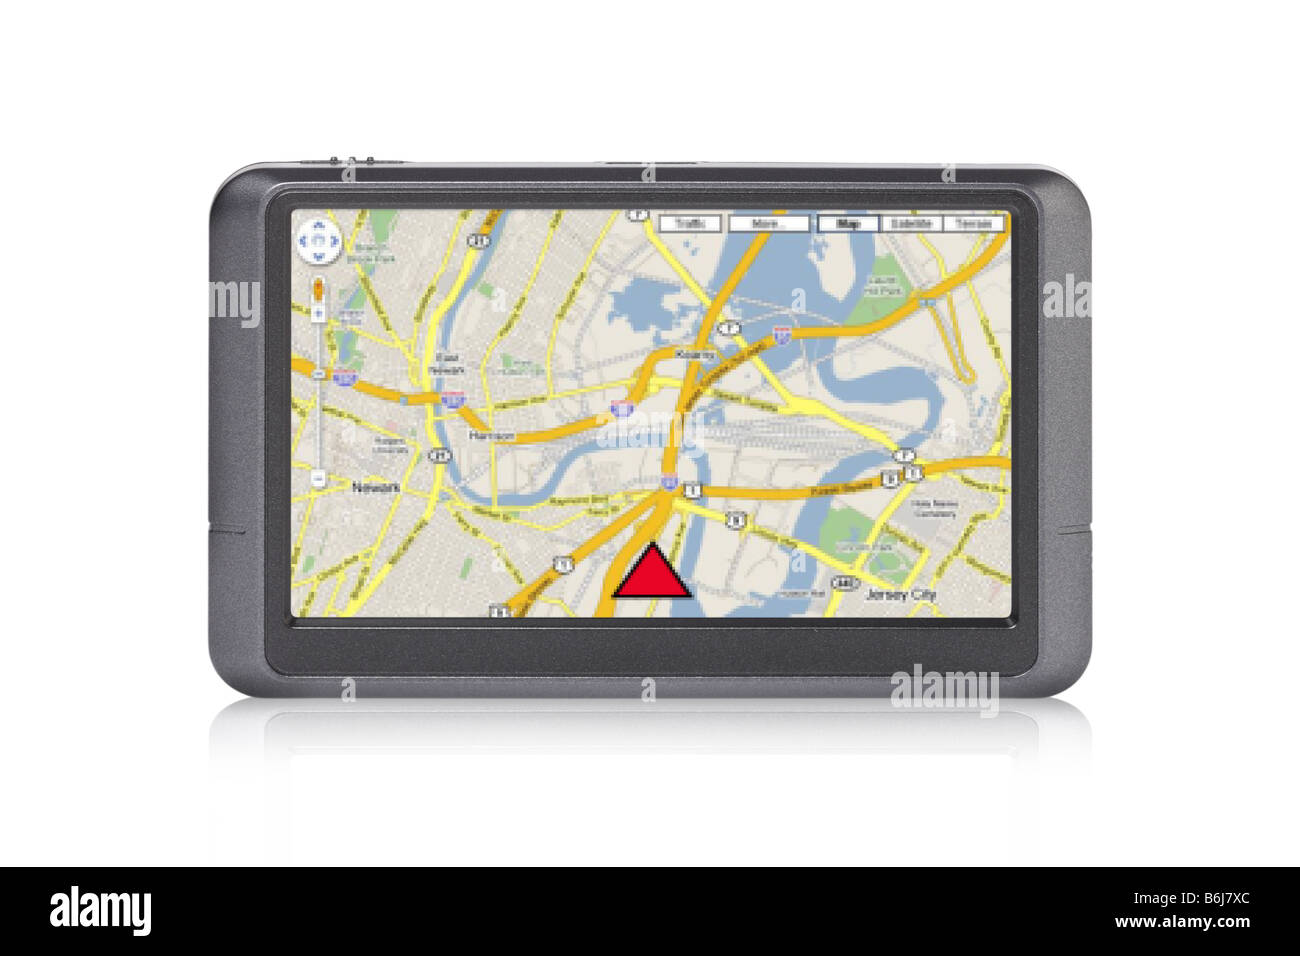 Appareil GPS portable avec une carte à l'écran dentelle sur fond blanc Banque D'Images